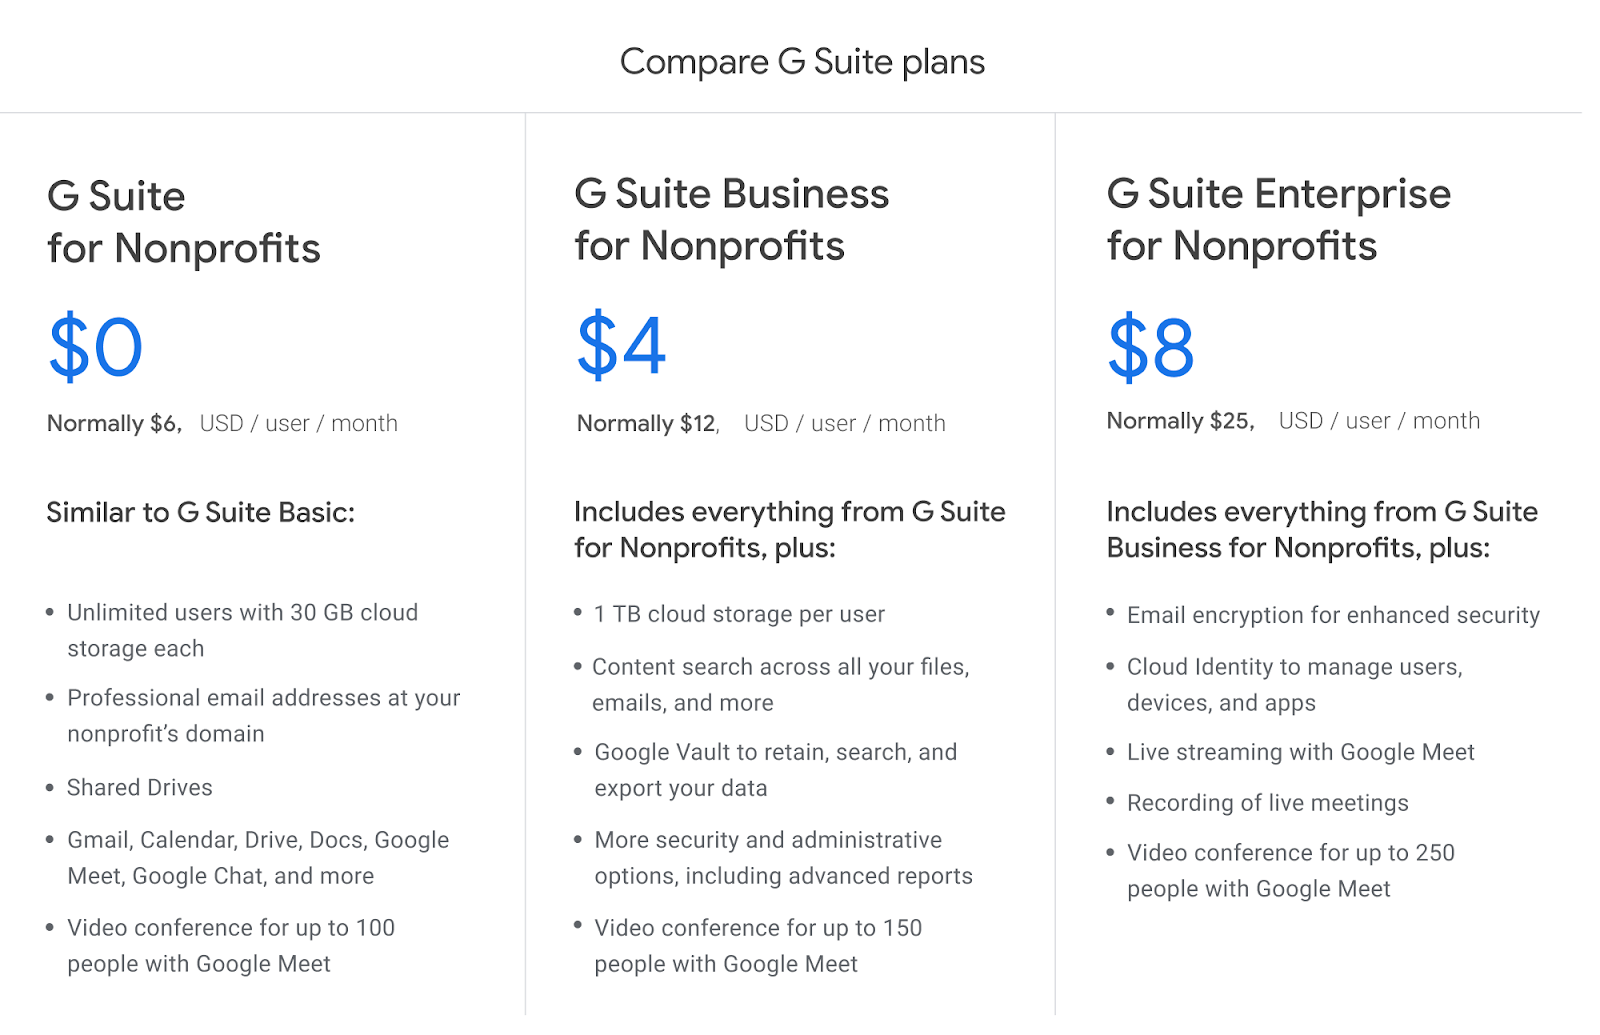 G Suite Nonprofit Plans